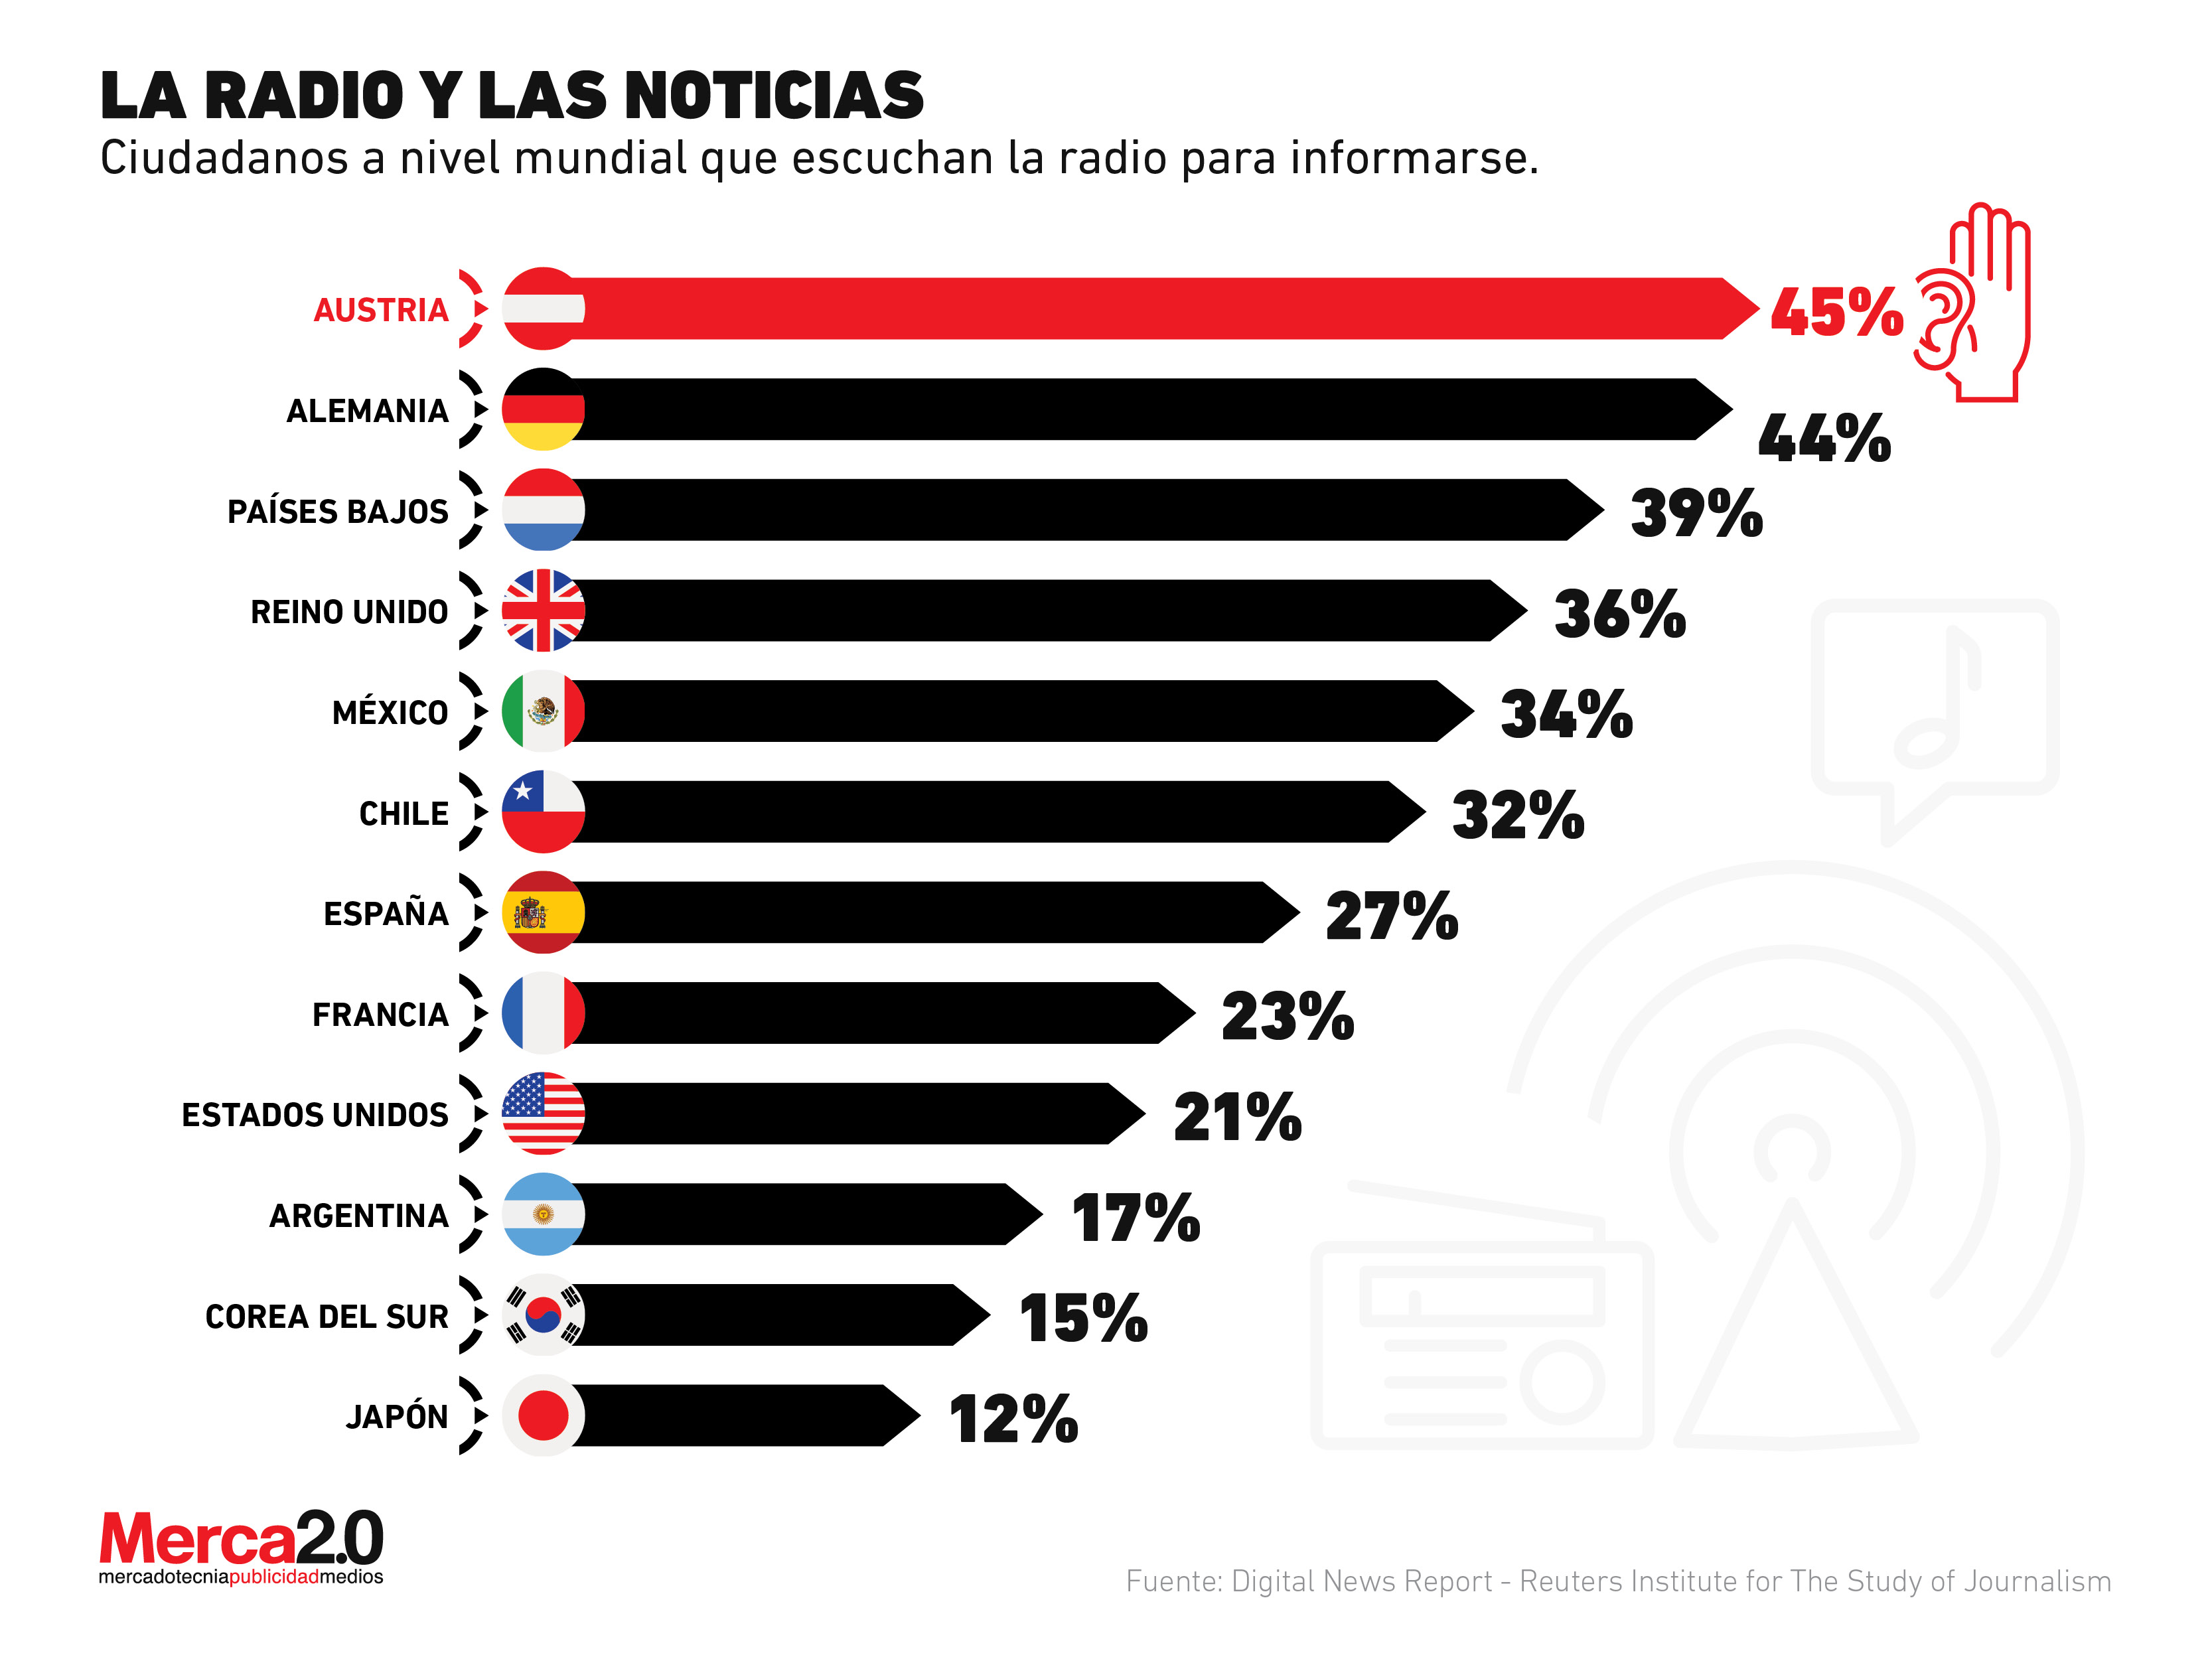 La radio es clave para el consumo de noticias